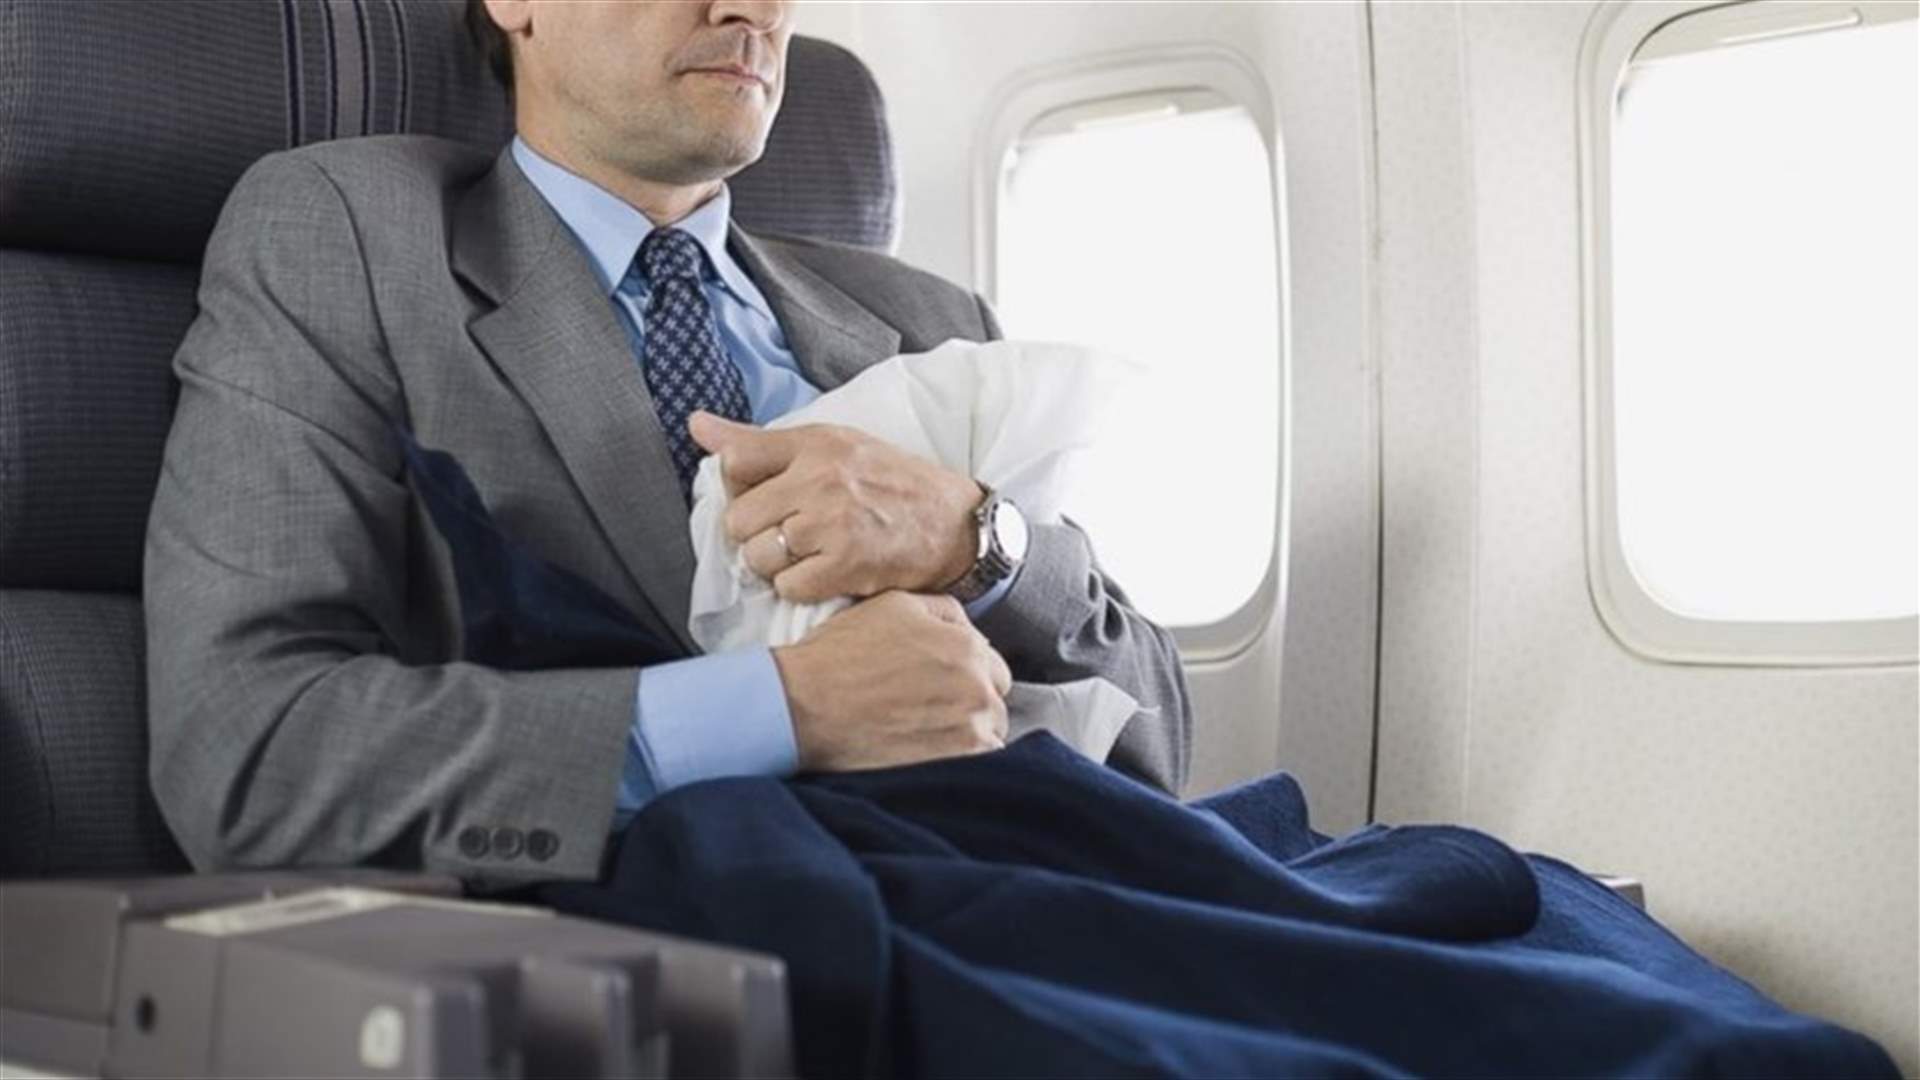 بالصور: رجل يُرعب المسافرين... من أحضر معه على متن الطائرة؟